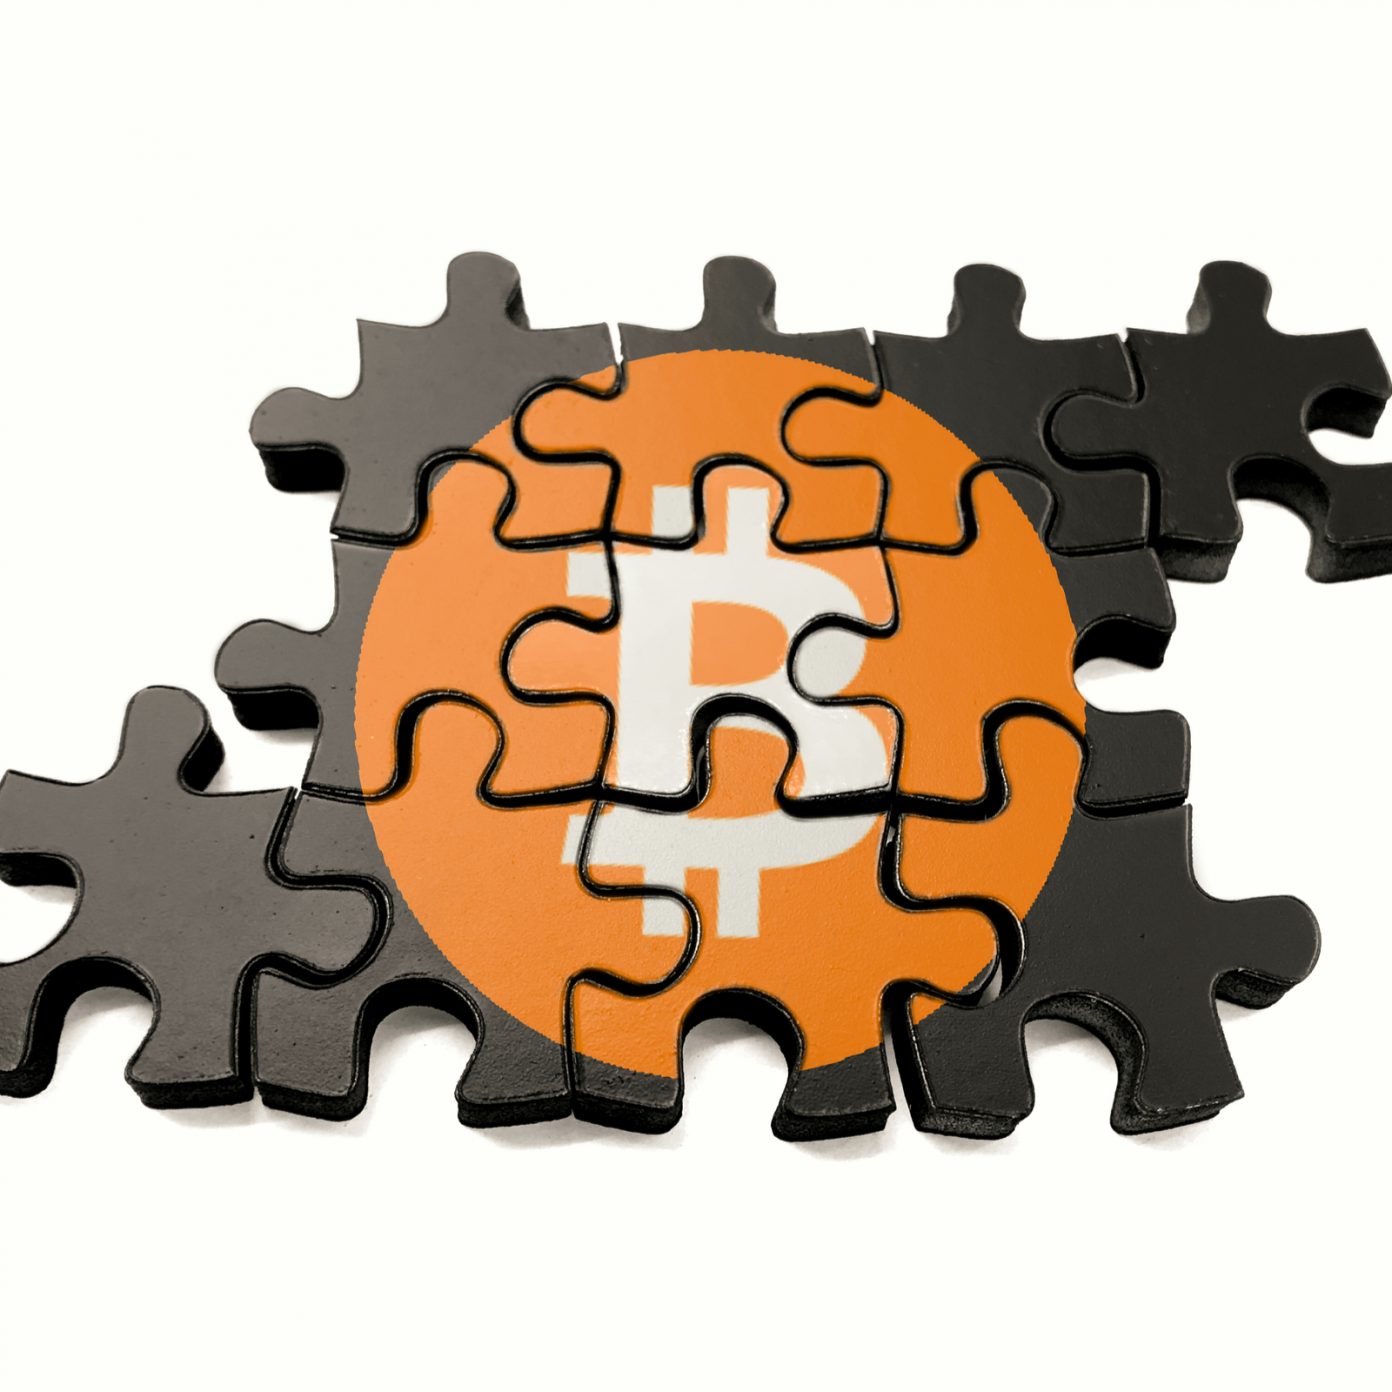 10 bitcoin puzzle